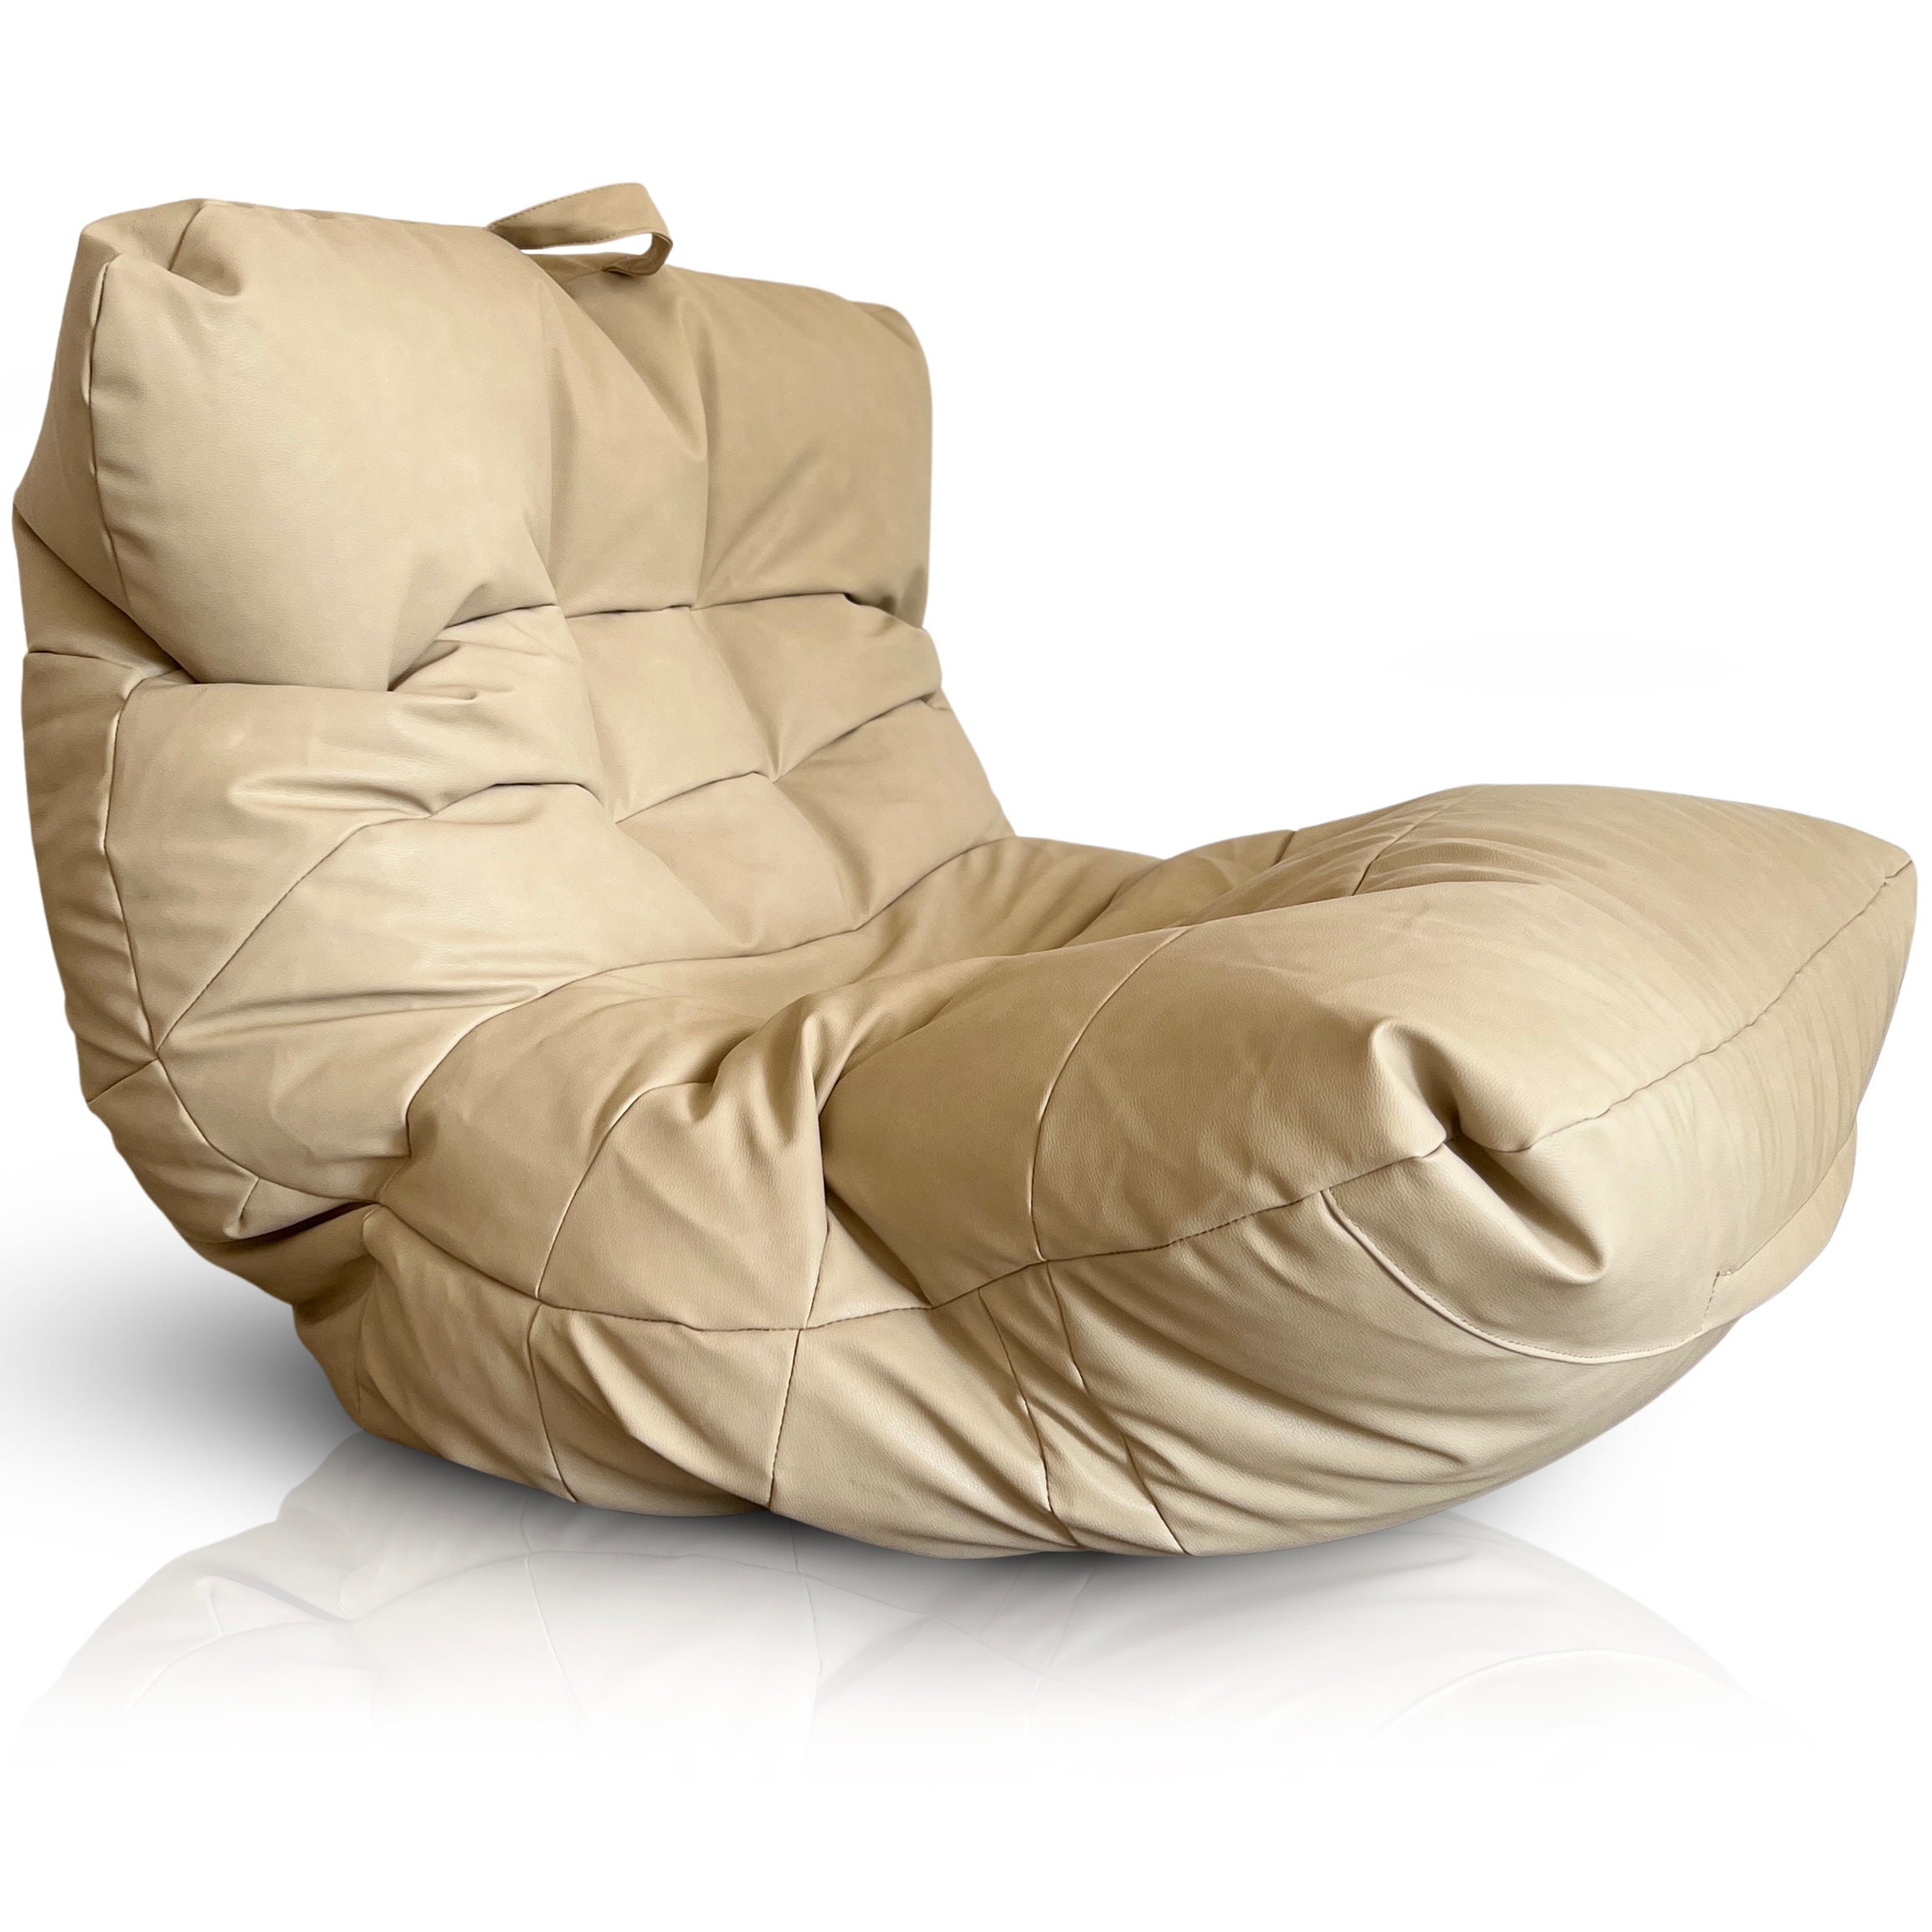 Aiire Fauteuil Pouf Salon de Luxe - Pouffe Geant Moderne avec Repose Pied  pour Décoration de la Chambre - Bean Bag Chair XXL Adulte ou Ado Design  Gris